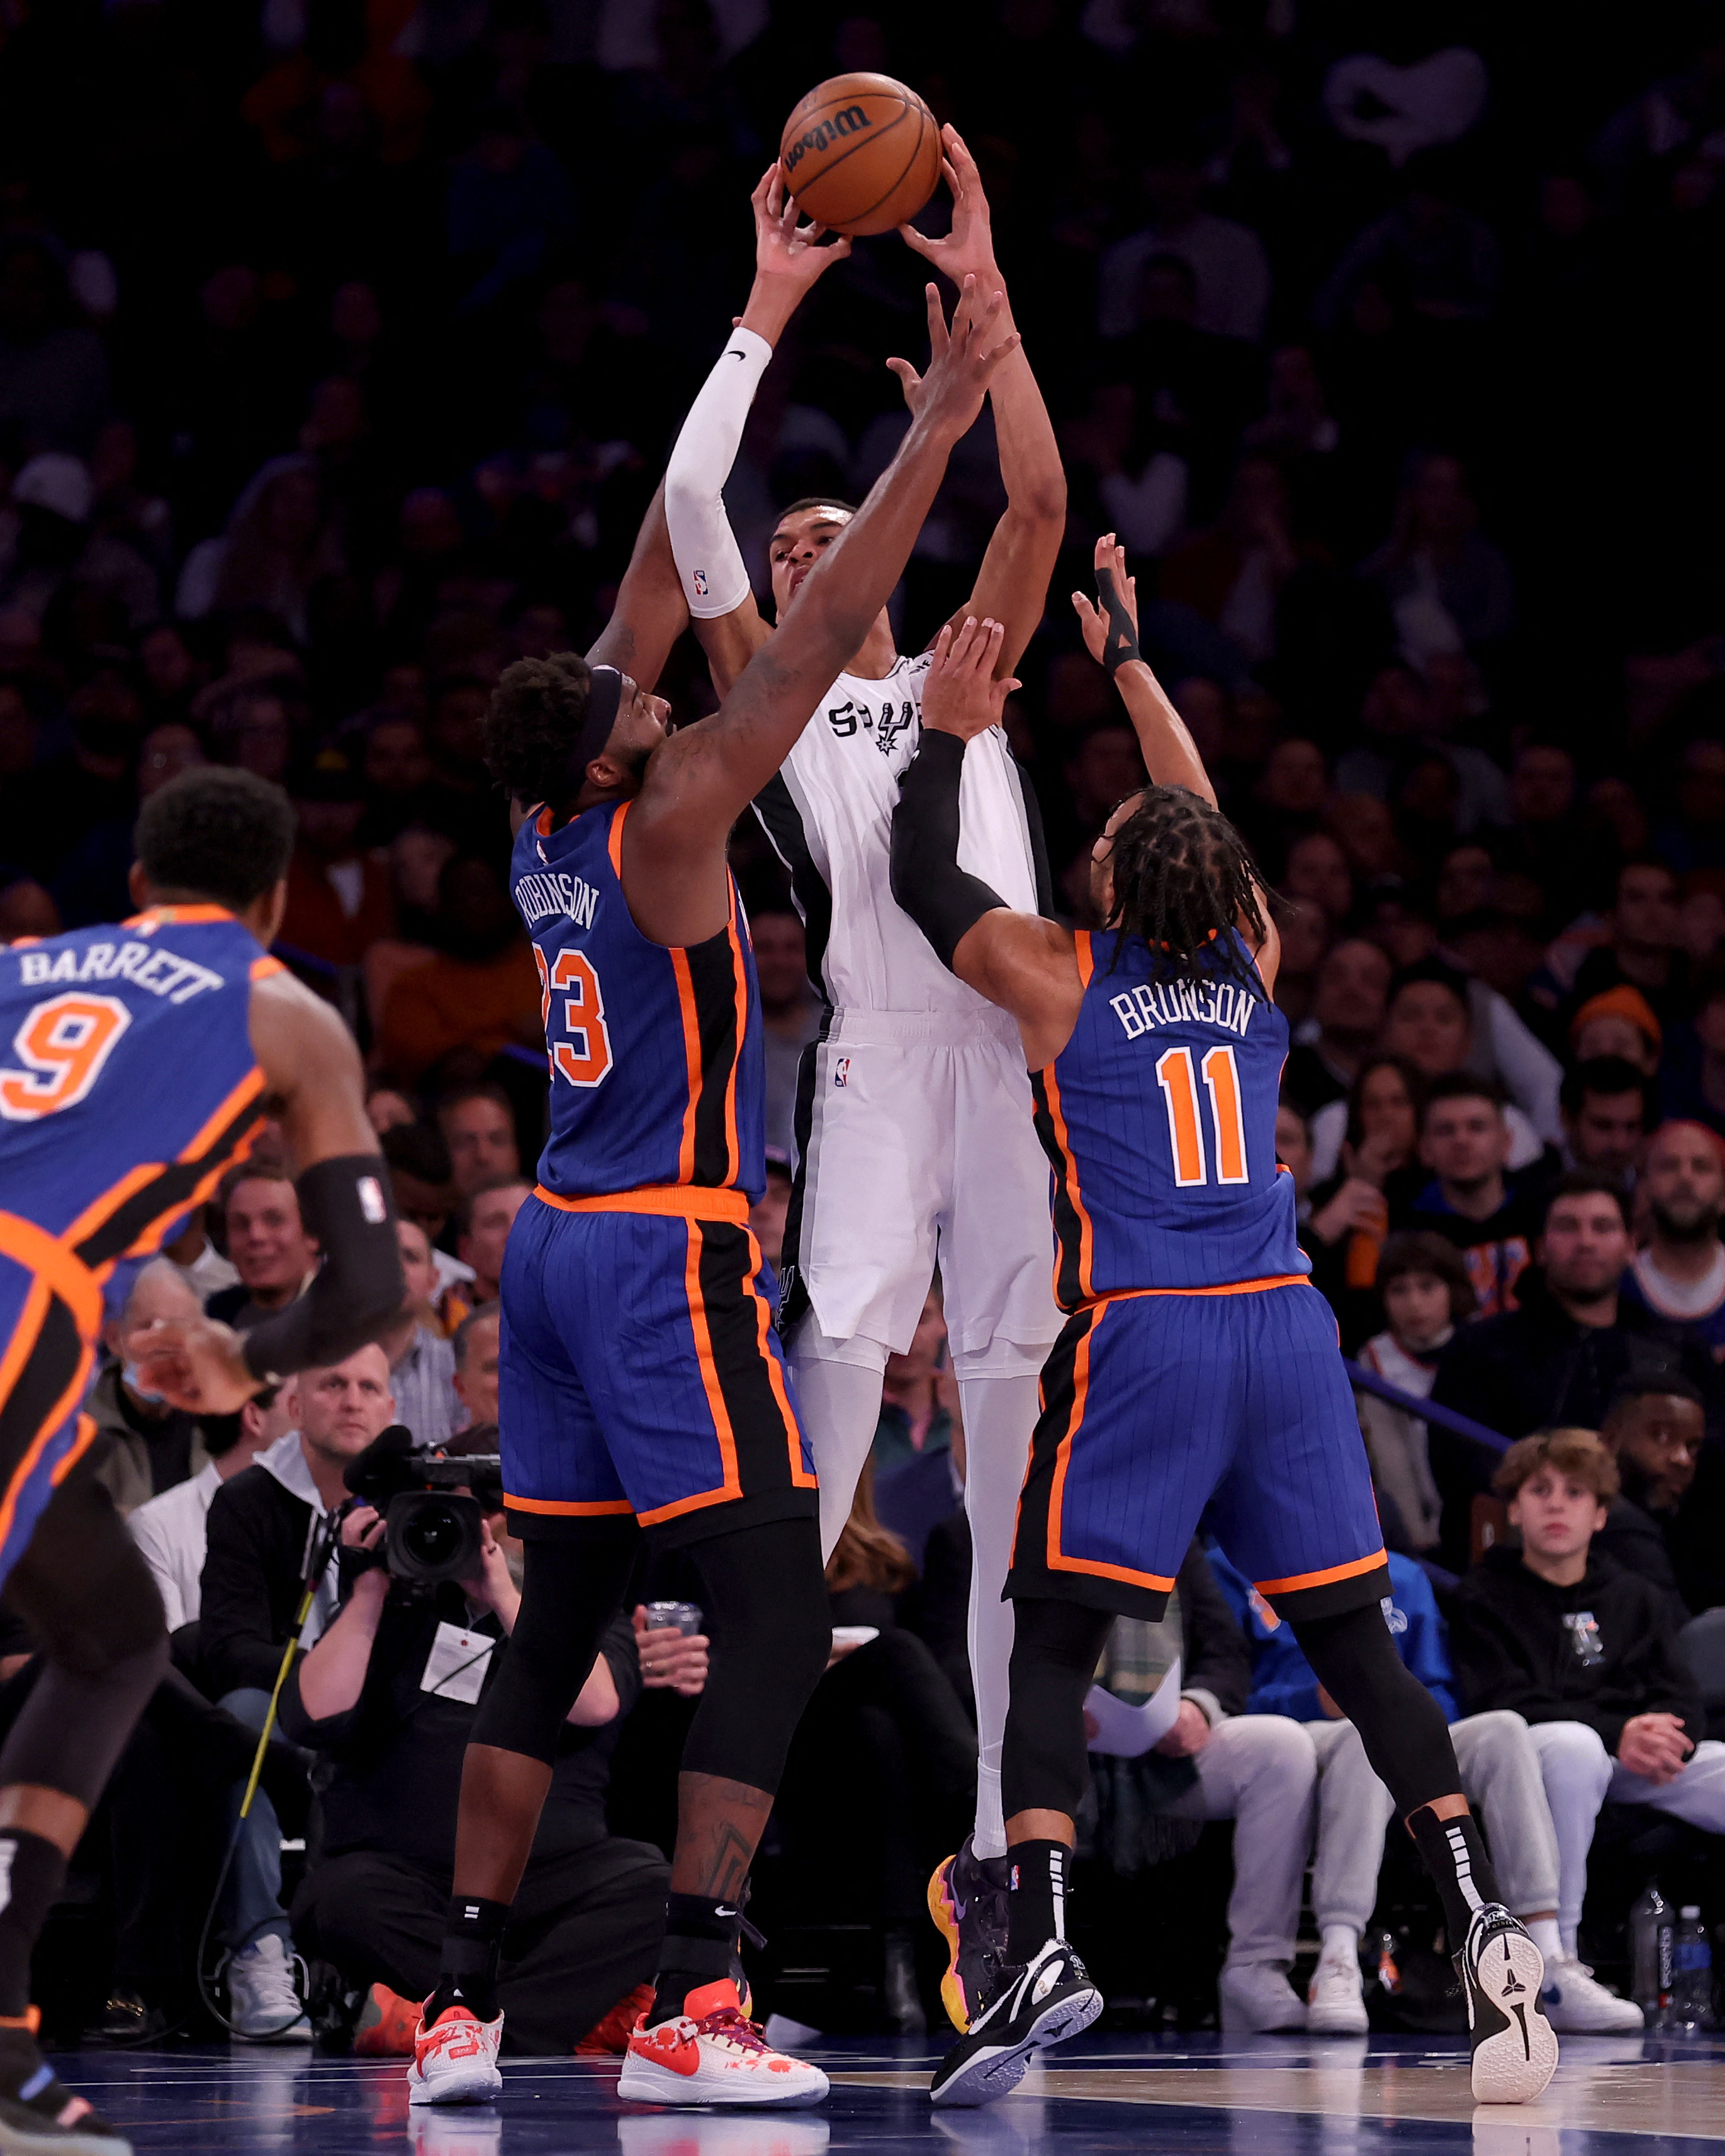 Melhores momentos New York Knicks x San Antonio Spurs pela NBA (126-105)